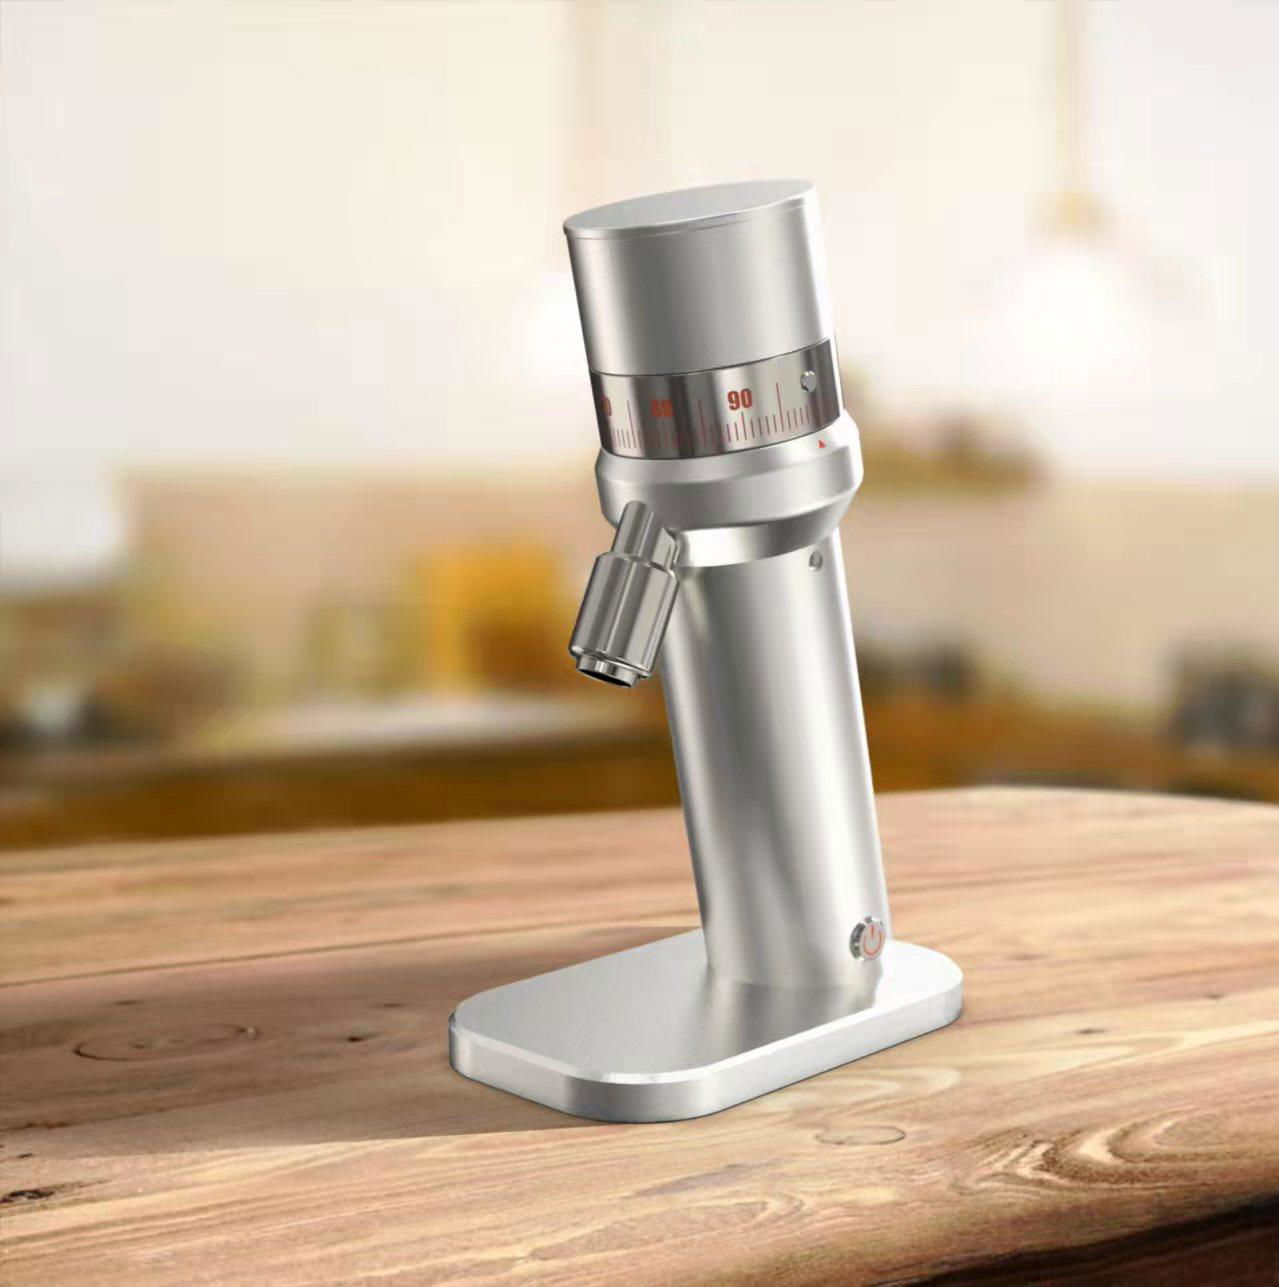 DM47 grinder electric espresso coffee grinder multiple burr coffee grinder  4